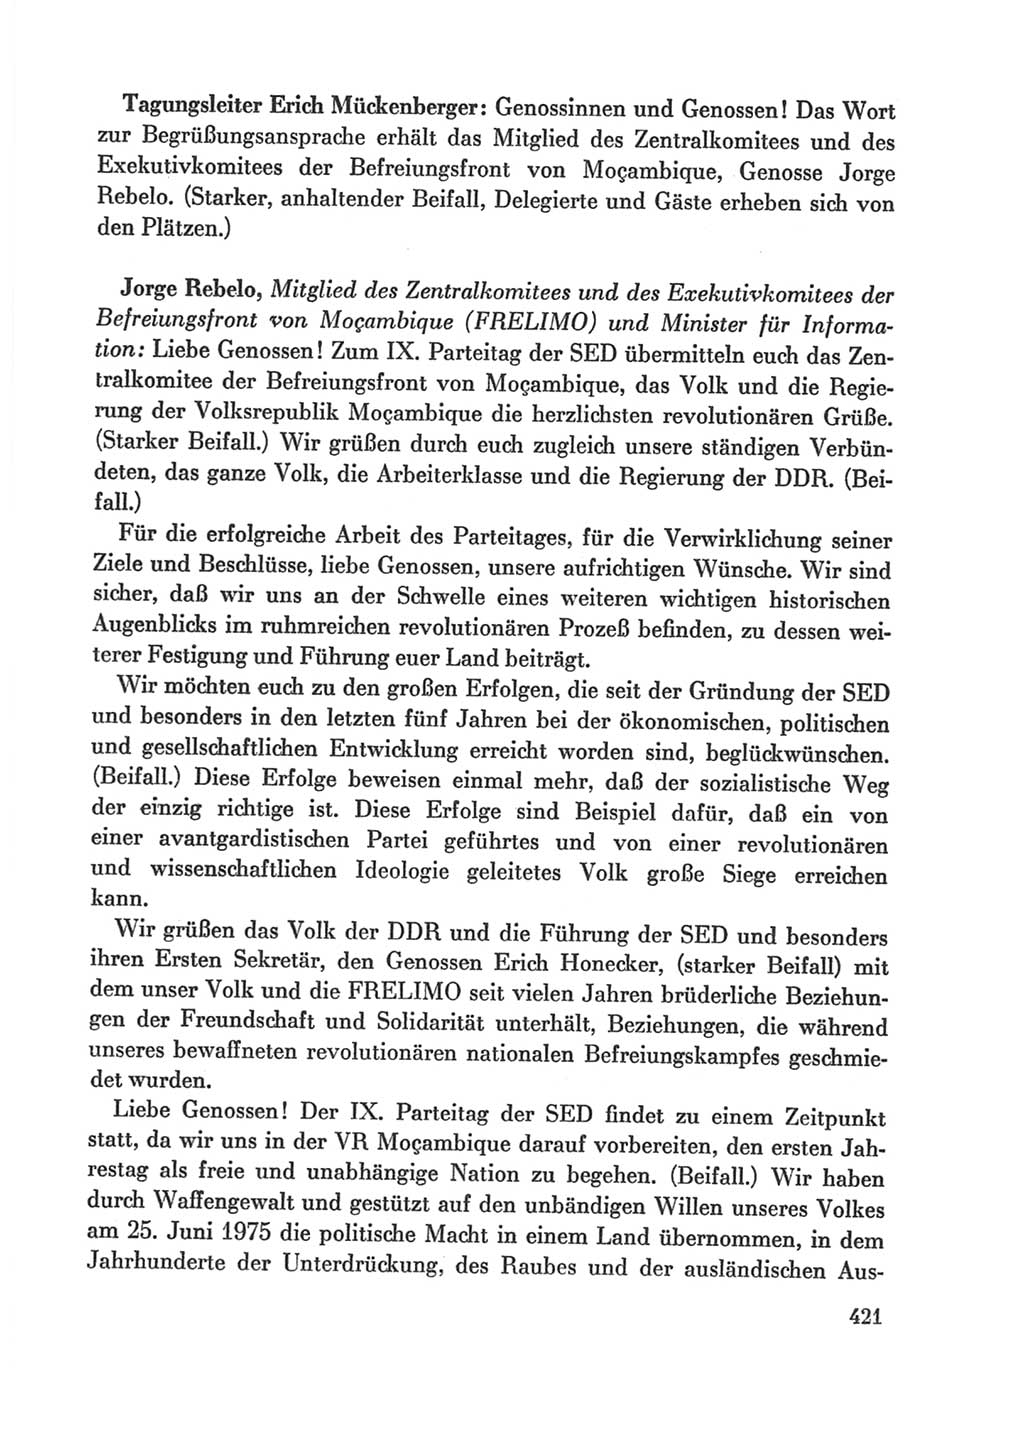 Protokoll der Verhandlungen des Ⅸ. Parteitages der Sozialistischen Einheitspartei Deutschlands (SED) [Deutsche Demokratische Republik (DDR)] 1976, Band 1, Seite 421 (Prot. Verh. Ⅸ. PT SED DDR 1976, Bd. 1, S. 421)